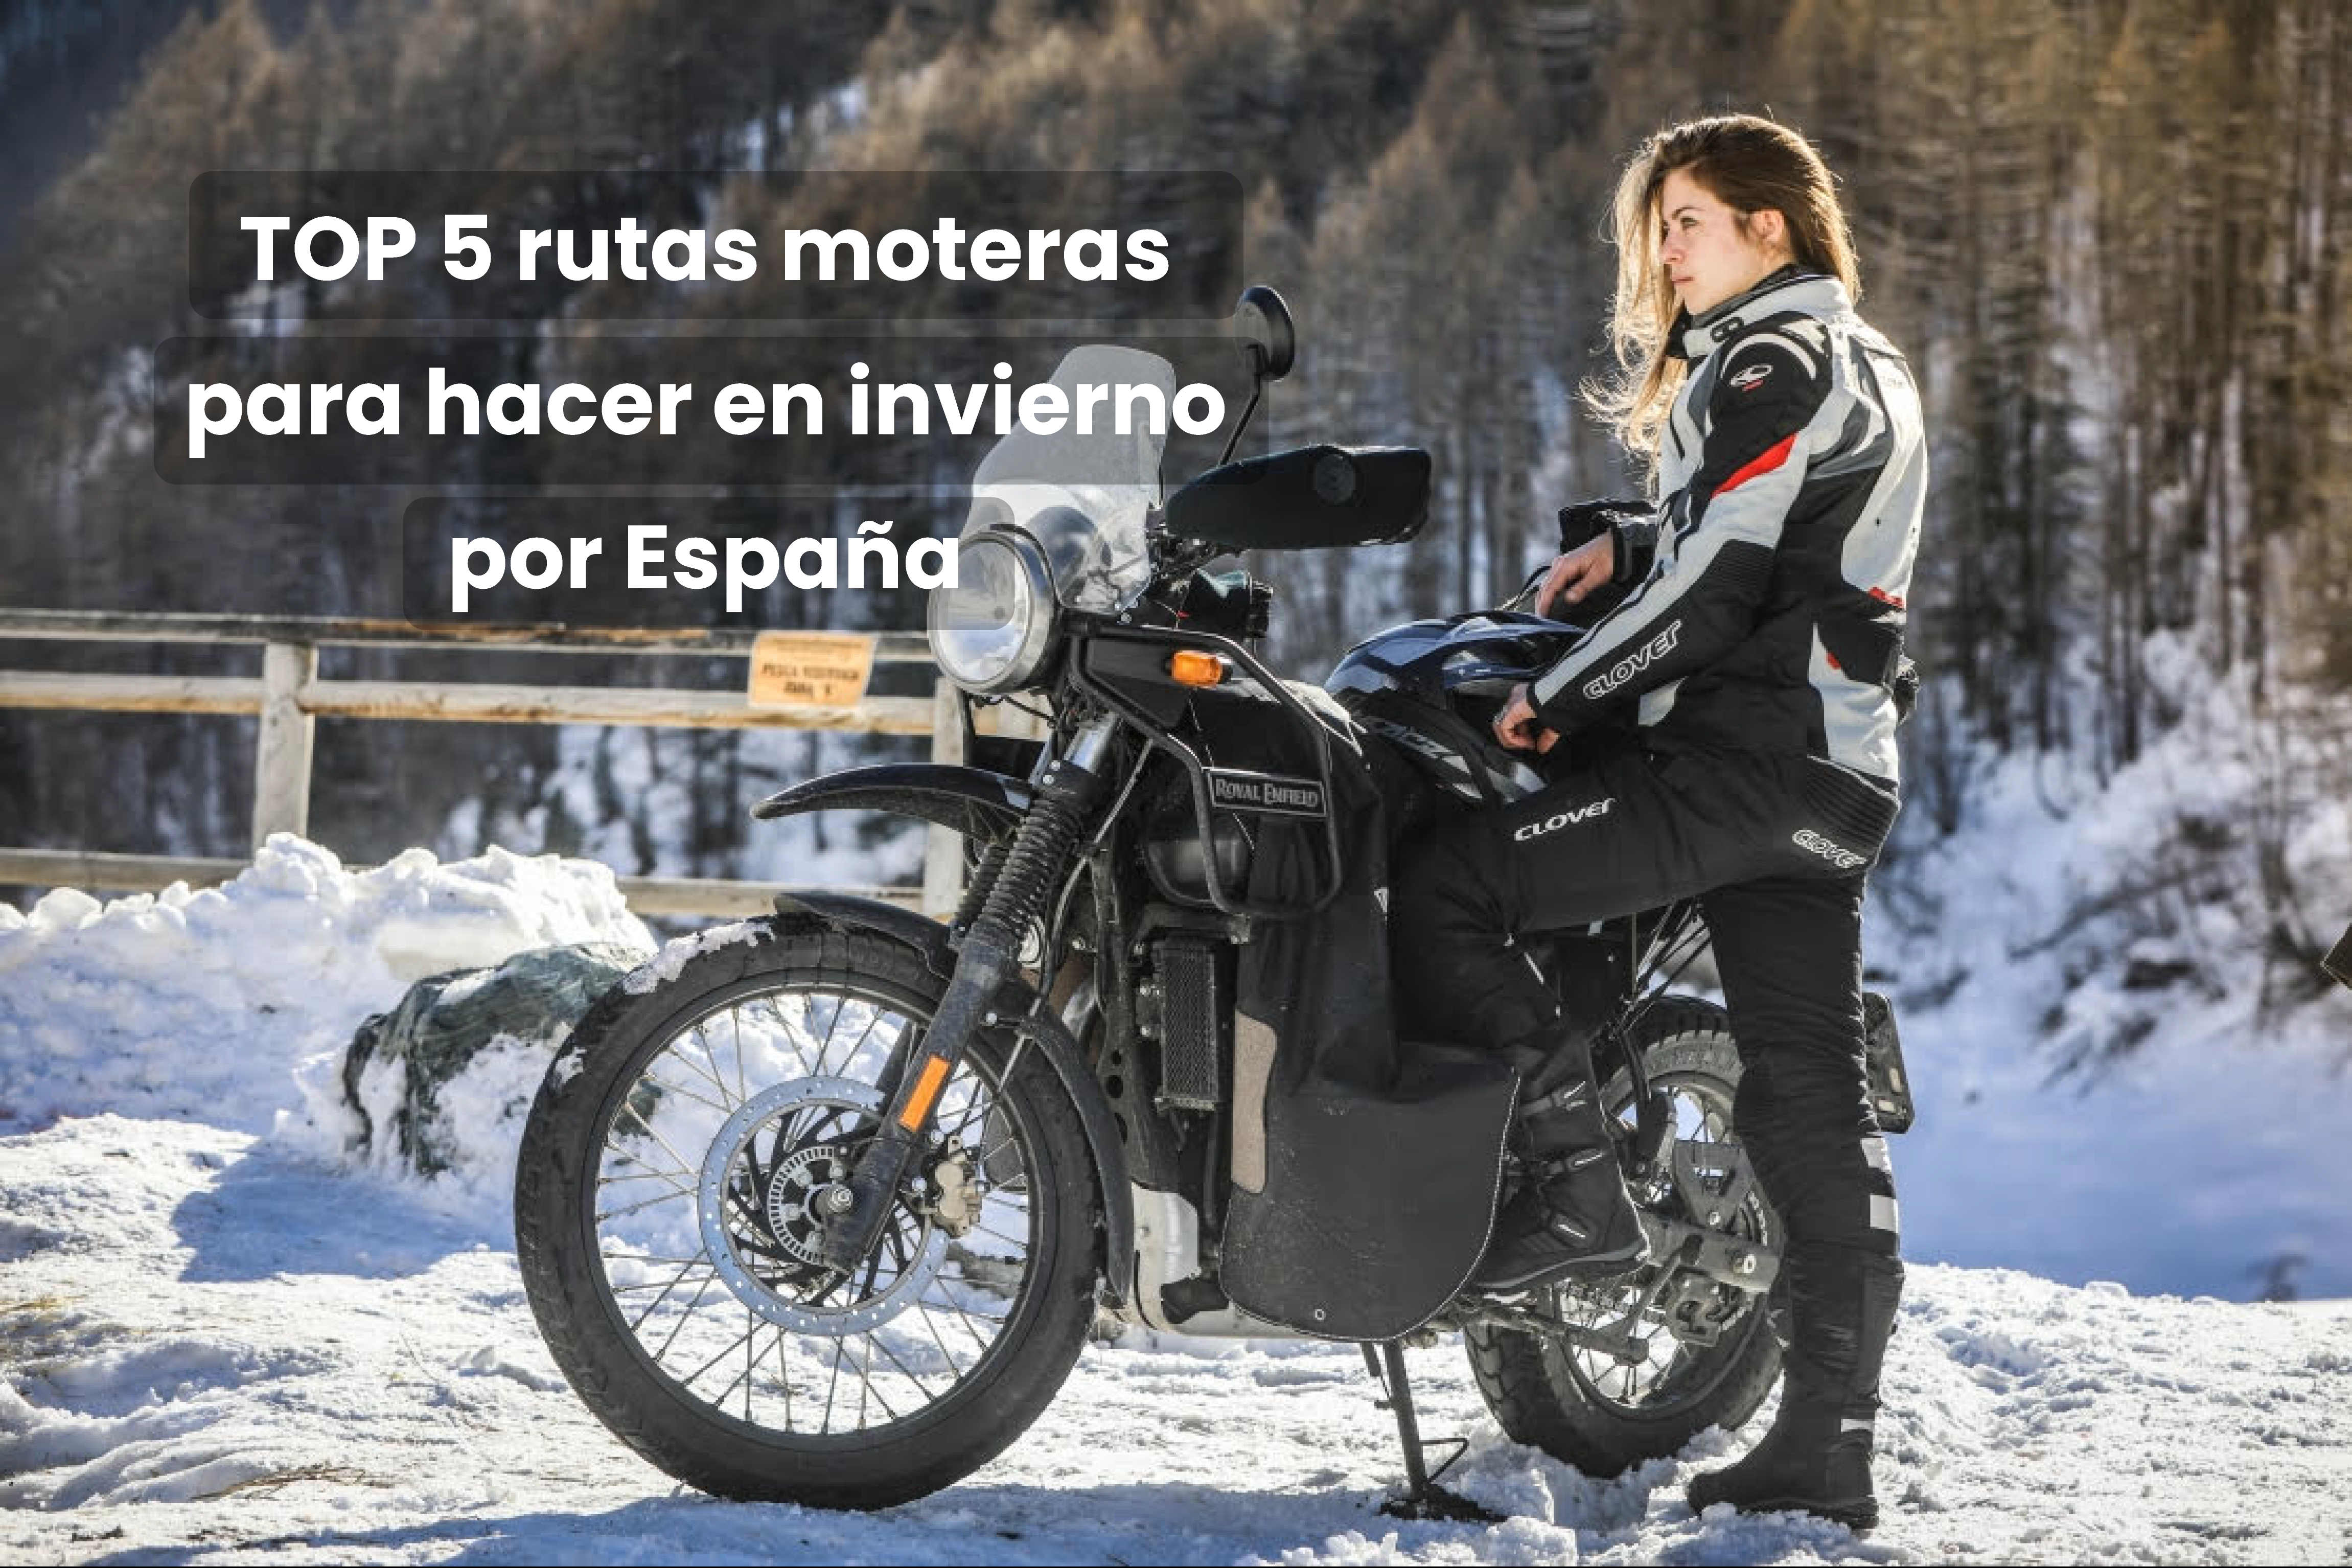 Rutas con las que disfrutar al máximo de tu moto este invierno